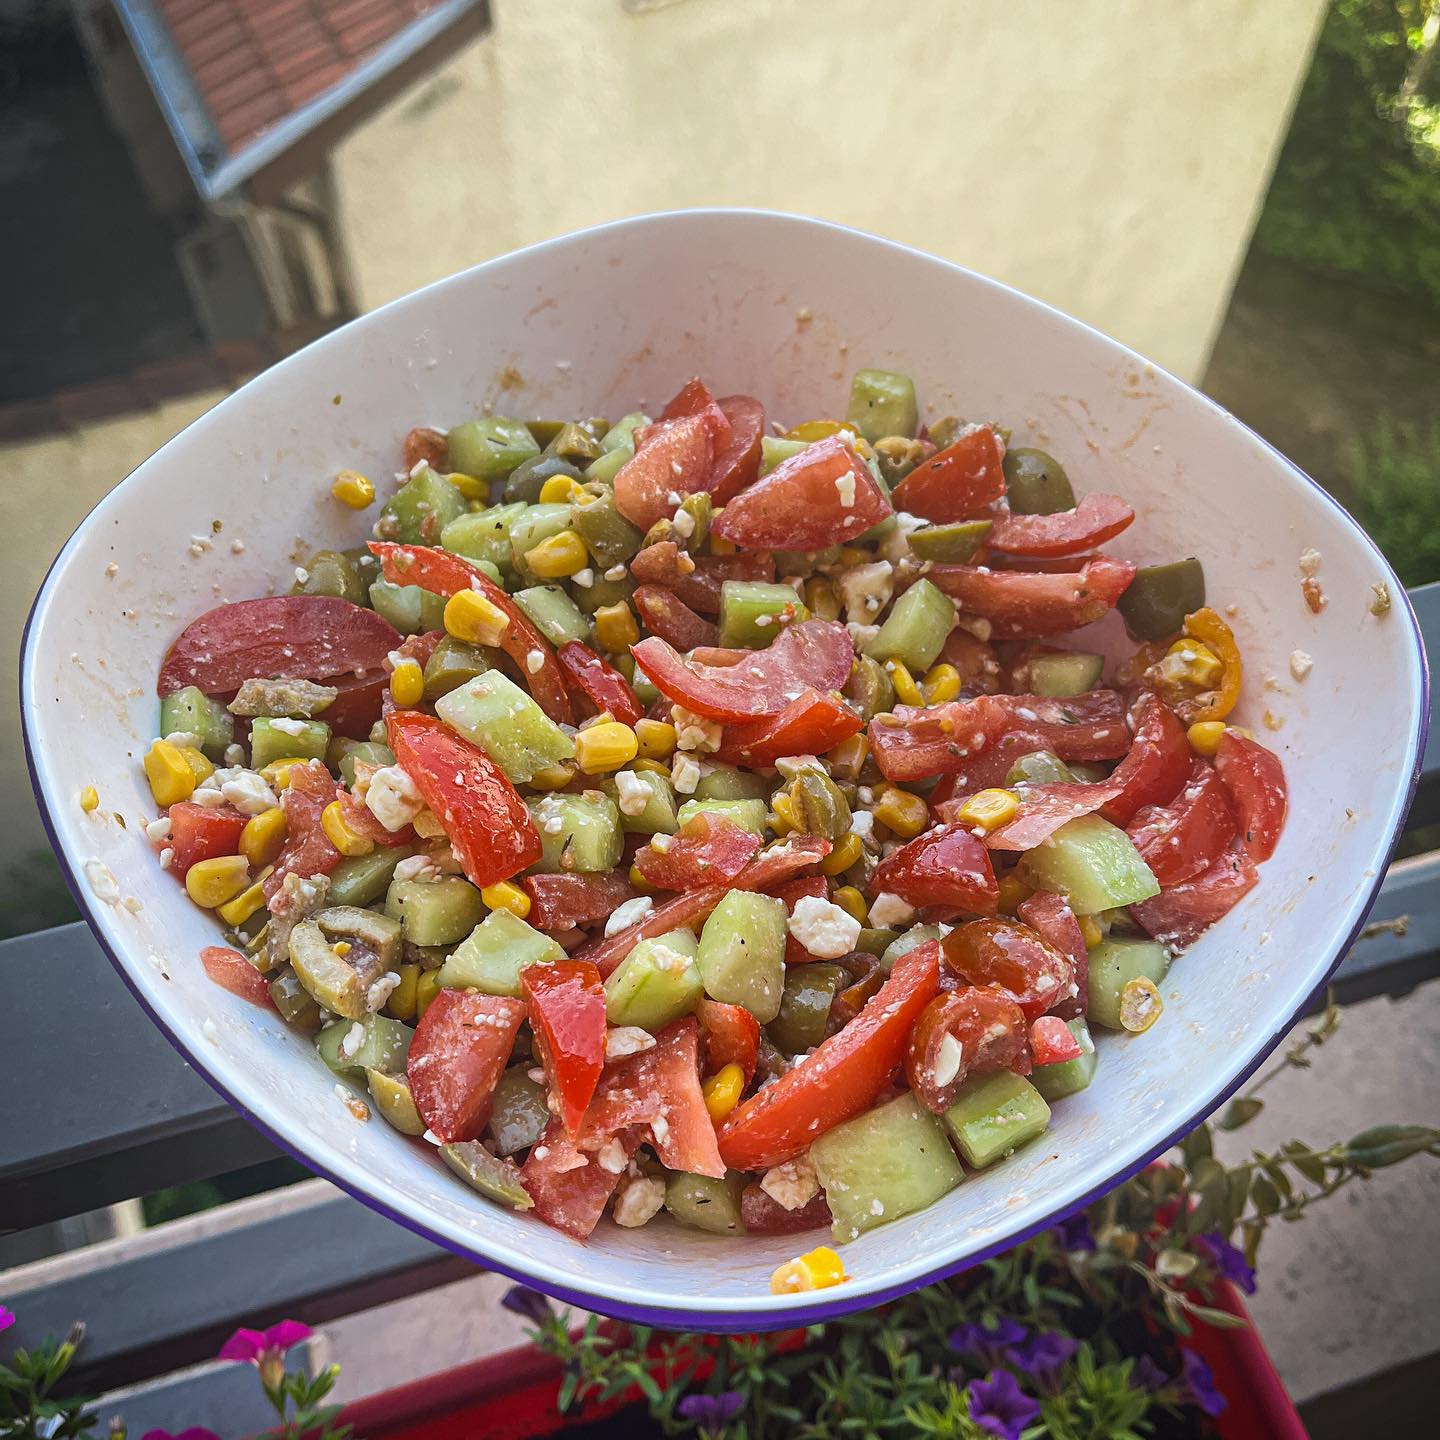 [𝙳𝚒𝚖𝚊𝚗𝚌𝚑𝚎 𝚜𝚊𝚕𝚊𝚍𝚎 / 𝚋𝚊𝚛𝚋𝚎𝚌𝚞𝚎 🙏]

Qu’avez-vous fait ce week-end ? 
Pour ma part, encore (et toujours 😋) un barbecue composé de saucisses et brochettes et bien sûr d’une jolie salade composée ☺️. 

————————————————————

1/ Lavez et découpez en lamelles, 5 tomates rondes. Versez-les dans un saladier. 
2/ Ajoutez une petite boîte de maïs. 
3/ Épluchez et découpez en deux, dans la longueur, un concombre 🥒. Videz l’intérieur puis découpez le en petits morceaux. 
4/ Ajoutez quelques olives vertes puis de la feta. 
5/ Pour l’assaisonnement, ajoutez du sel, du poivre, quelques herbes de Provence, de l’huile d’olive au basilic et du vinaigre balsamique 🌿. 

————————————————————

#cuisinemoi #cuisine #recette #recetterapide #recettefacile #blogcuisine #concombre #tomate #salade #entrée #fraicheur #recettefacilerapide #food #foodporn #foodblogger #foodpics #foodie #foodstagram